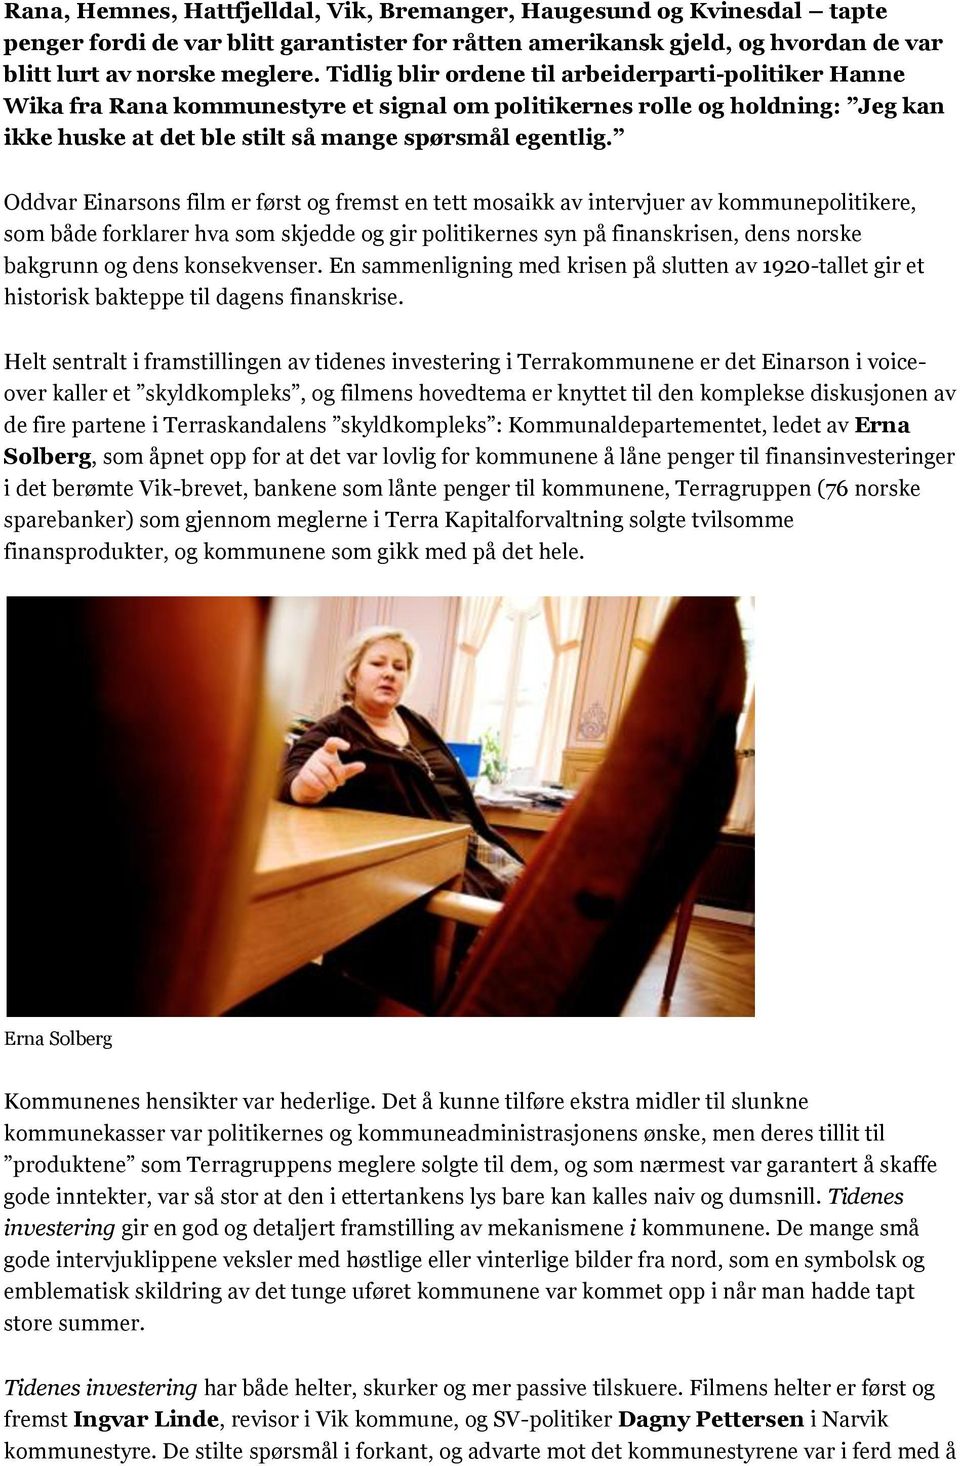 Oddvar Einarsons film er først og fremst en tett mosaikk av intervjuer av kommunepolitikere, som både forklarer hva som skjedde og gir politikernes syn på finanskrisen, dens norske bakgrunn og dens